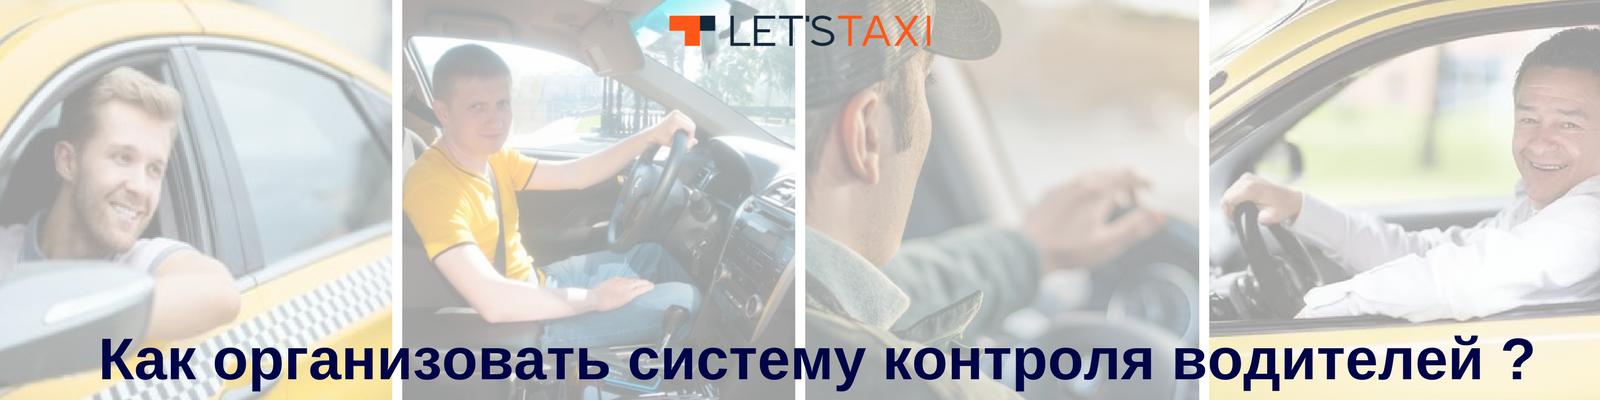 Let`s taxi предлагает контроль водителей 